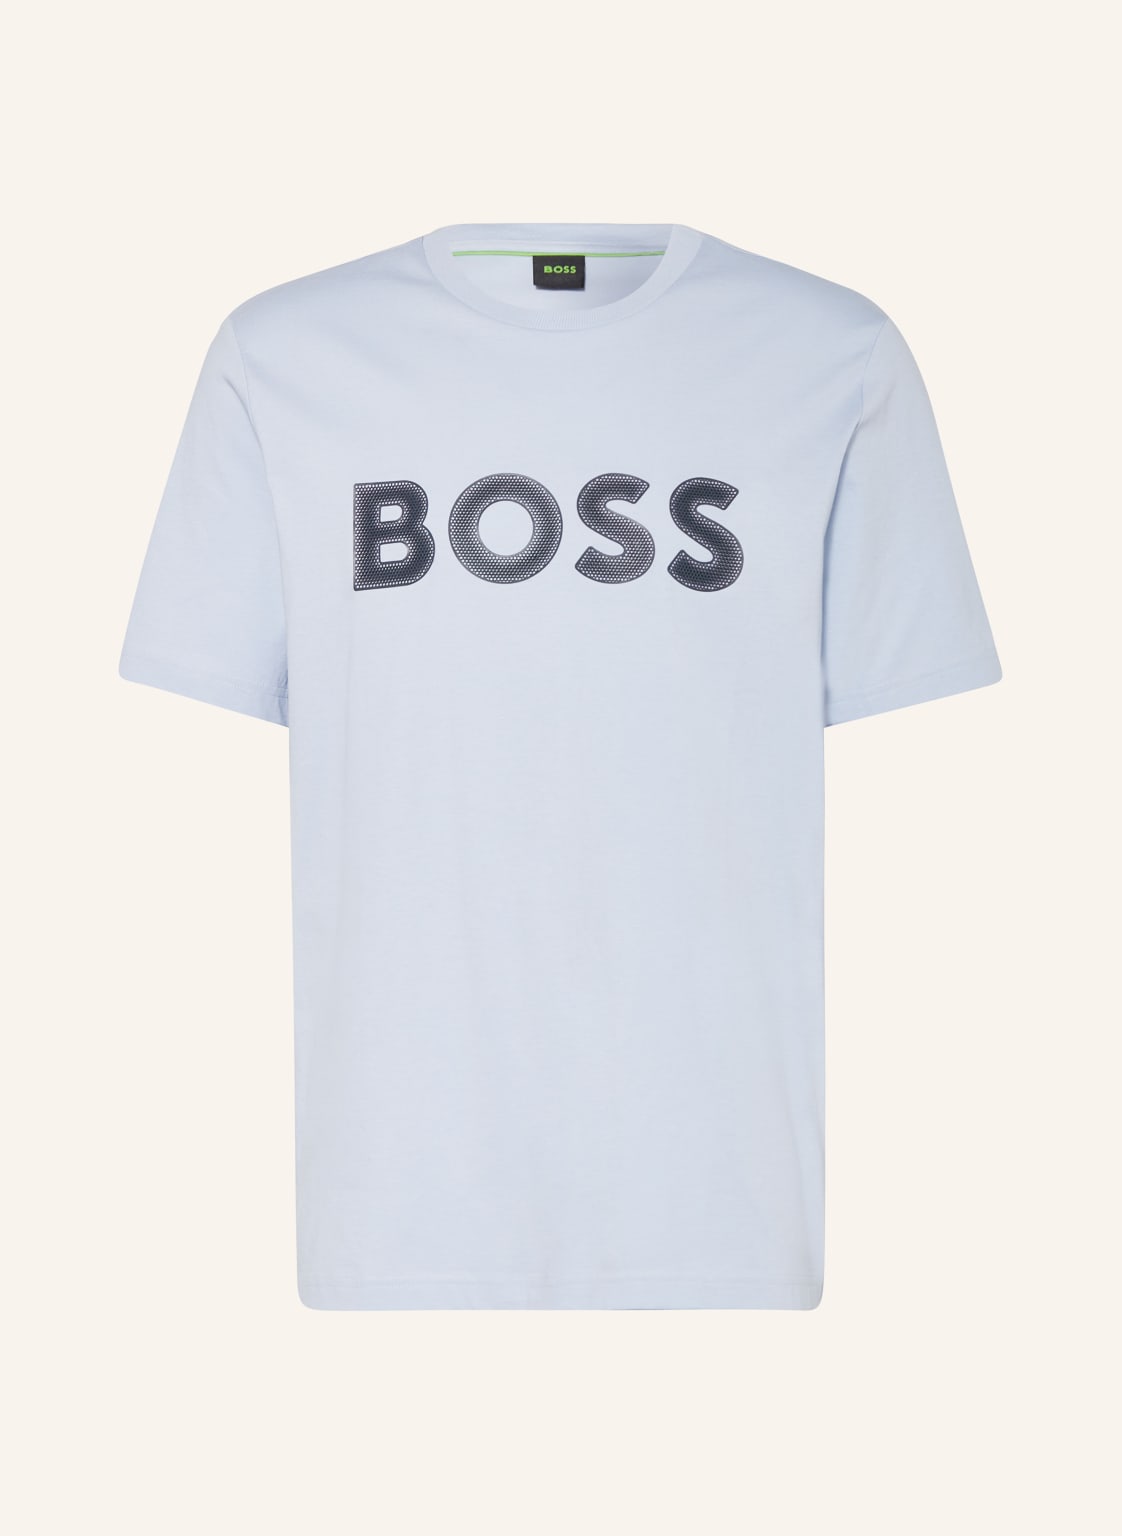 Boss T-Shirt blau von Boss